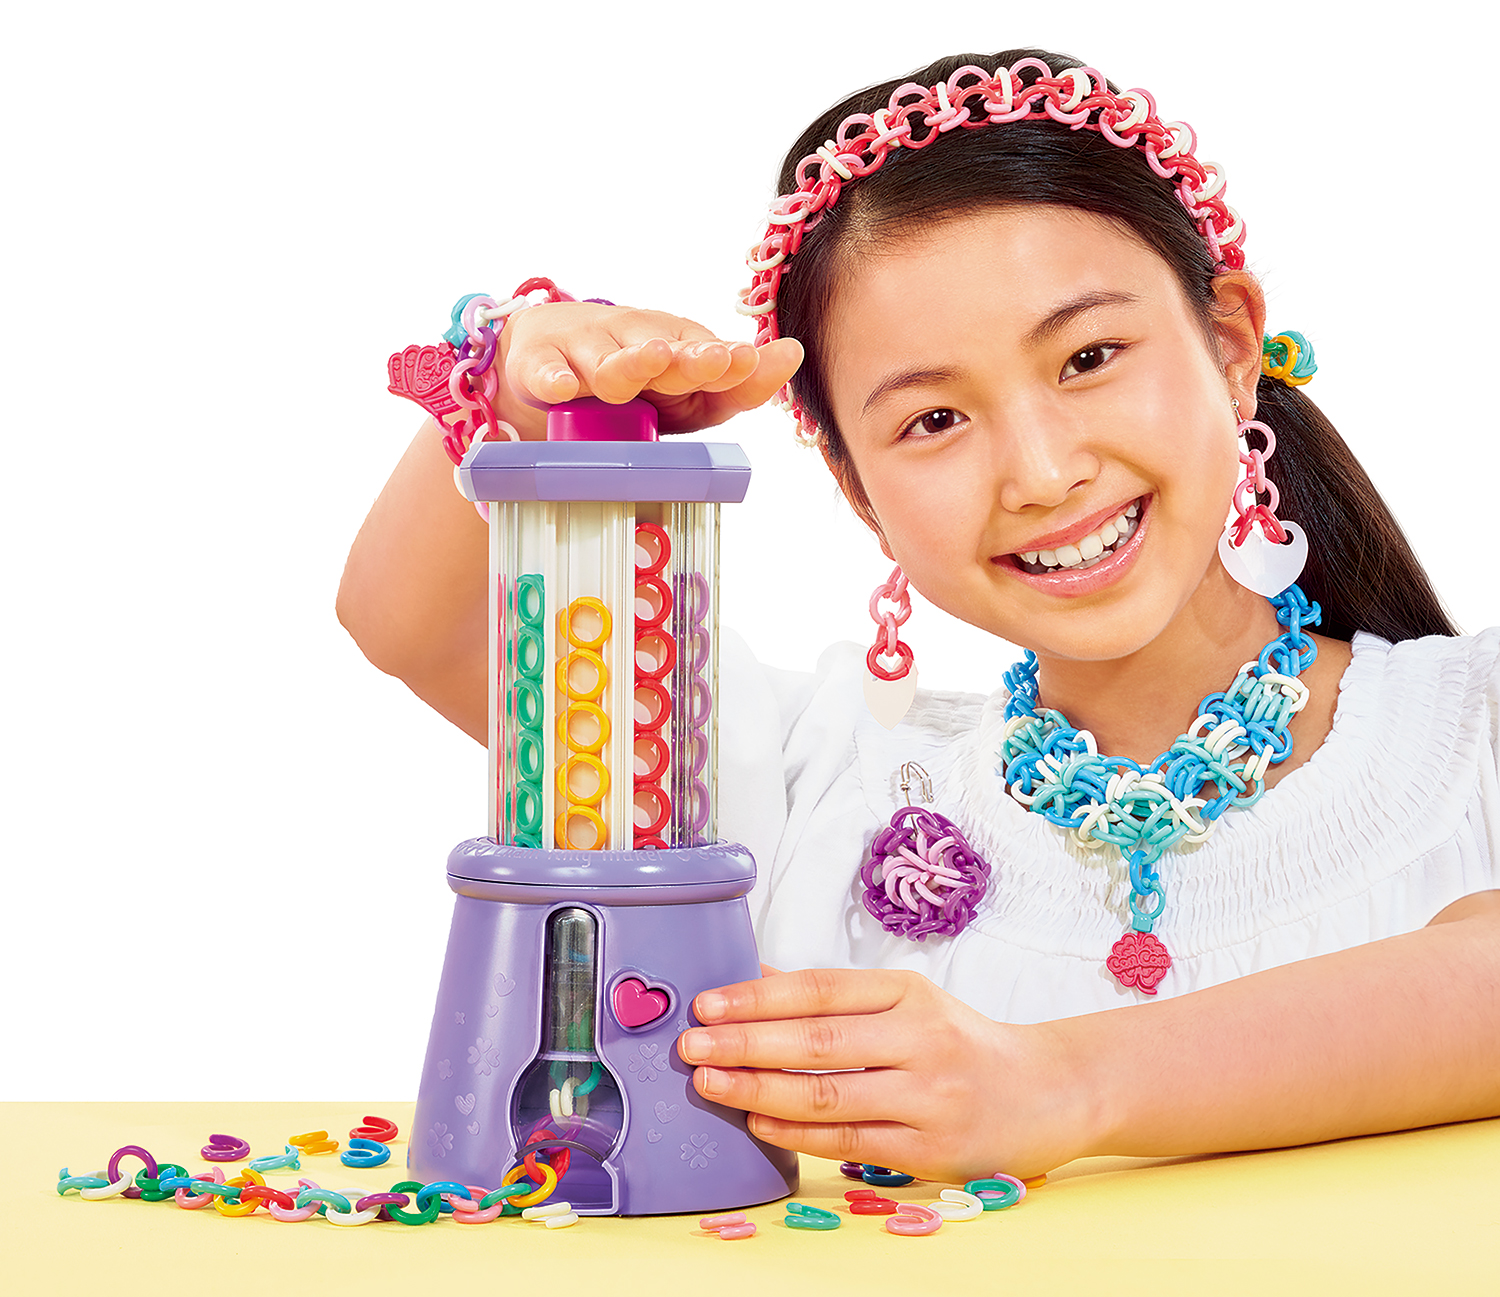 懐かしい女の子の定番おもちゃチェーンリングが 楽しくおしゃれに新登場 チェーンリングメーカー 株式会社アガツマのプレスリリース